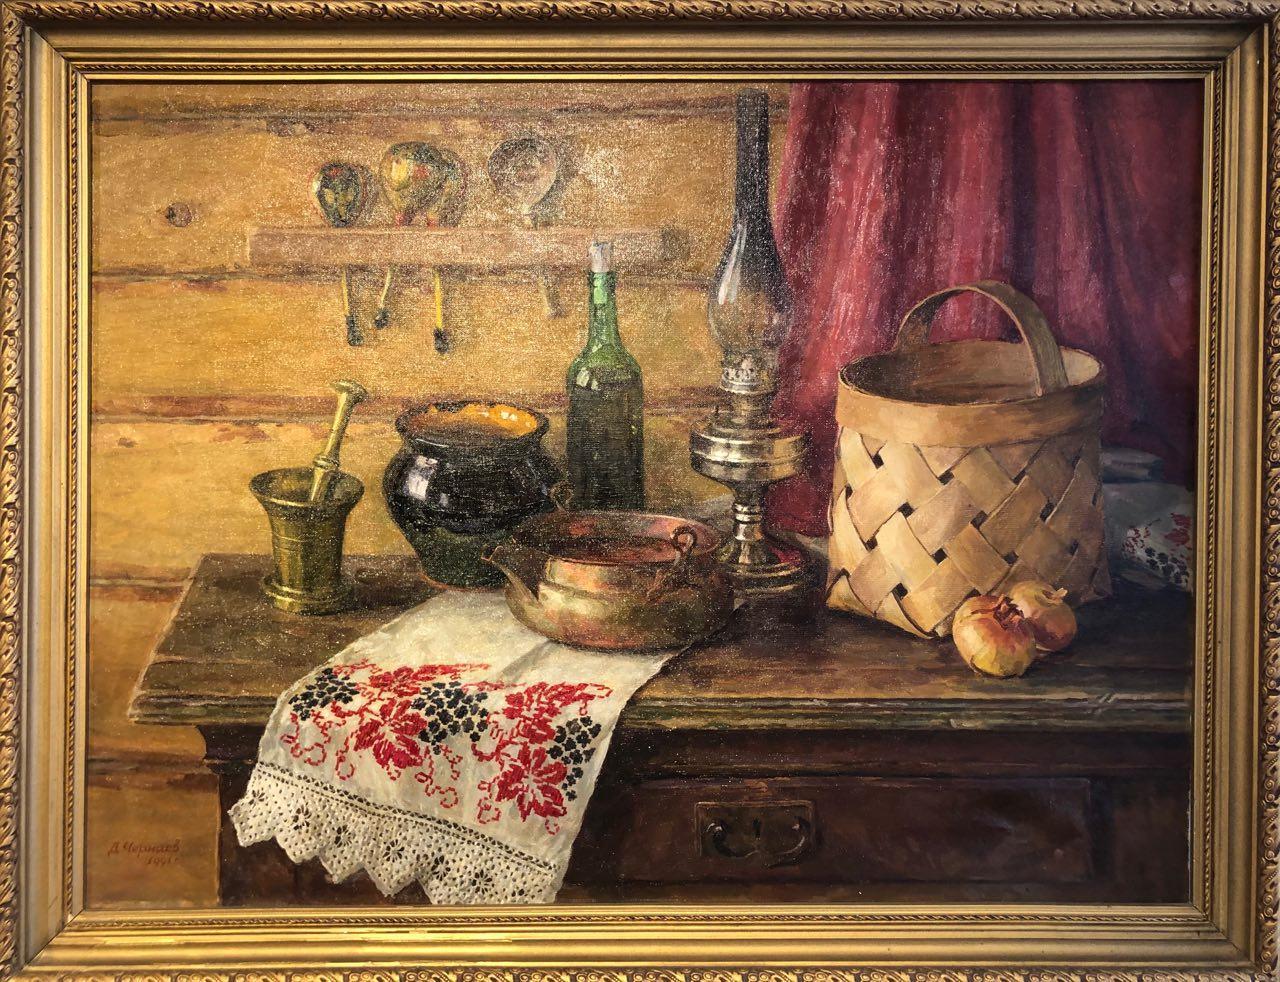 Russian Corner, Dmitry Chernyaev, 27"x35" Oil on Canvas, 1991, framed, $550